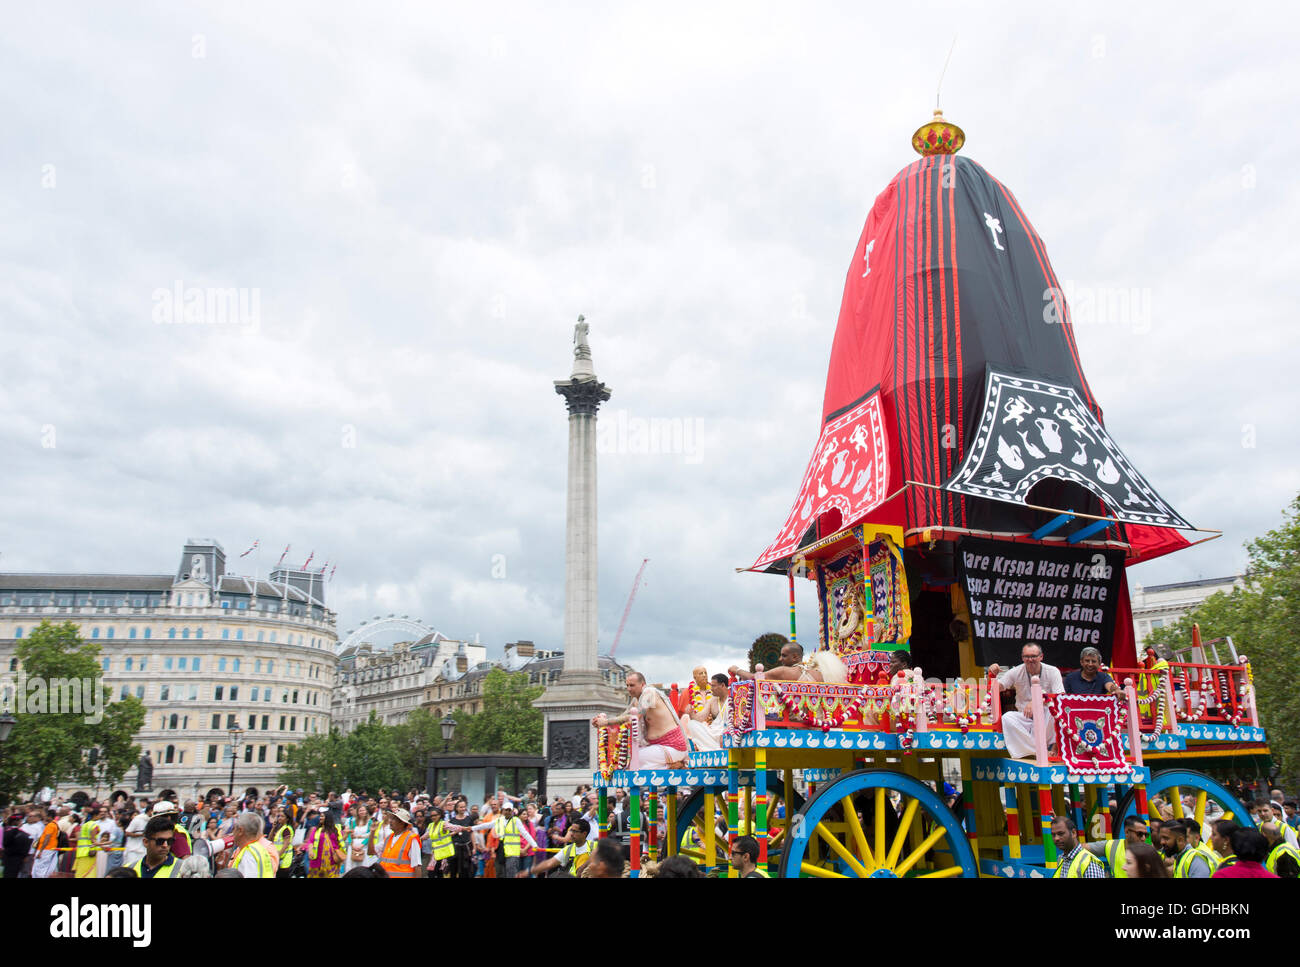 Un char colorés se retrouvent dans Trafalgar Square, dans le centre de Londres, pour célébrer le 50e anniversaire de l'Association internationale pour la conscience de Krishna (ISKCON) lors de Ratha-Yatra, festival de chars dans le calendrier hindou. Banque D'Images